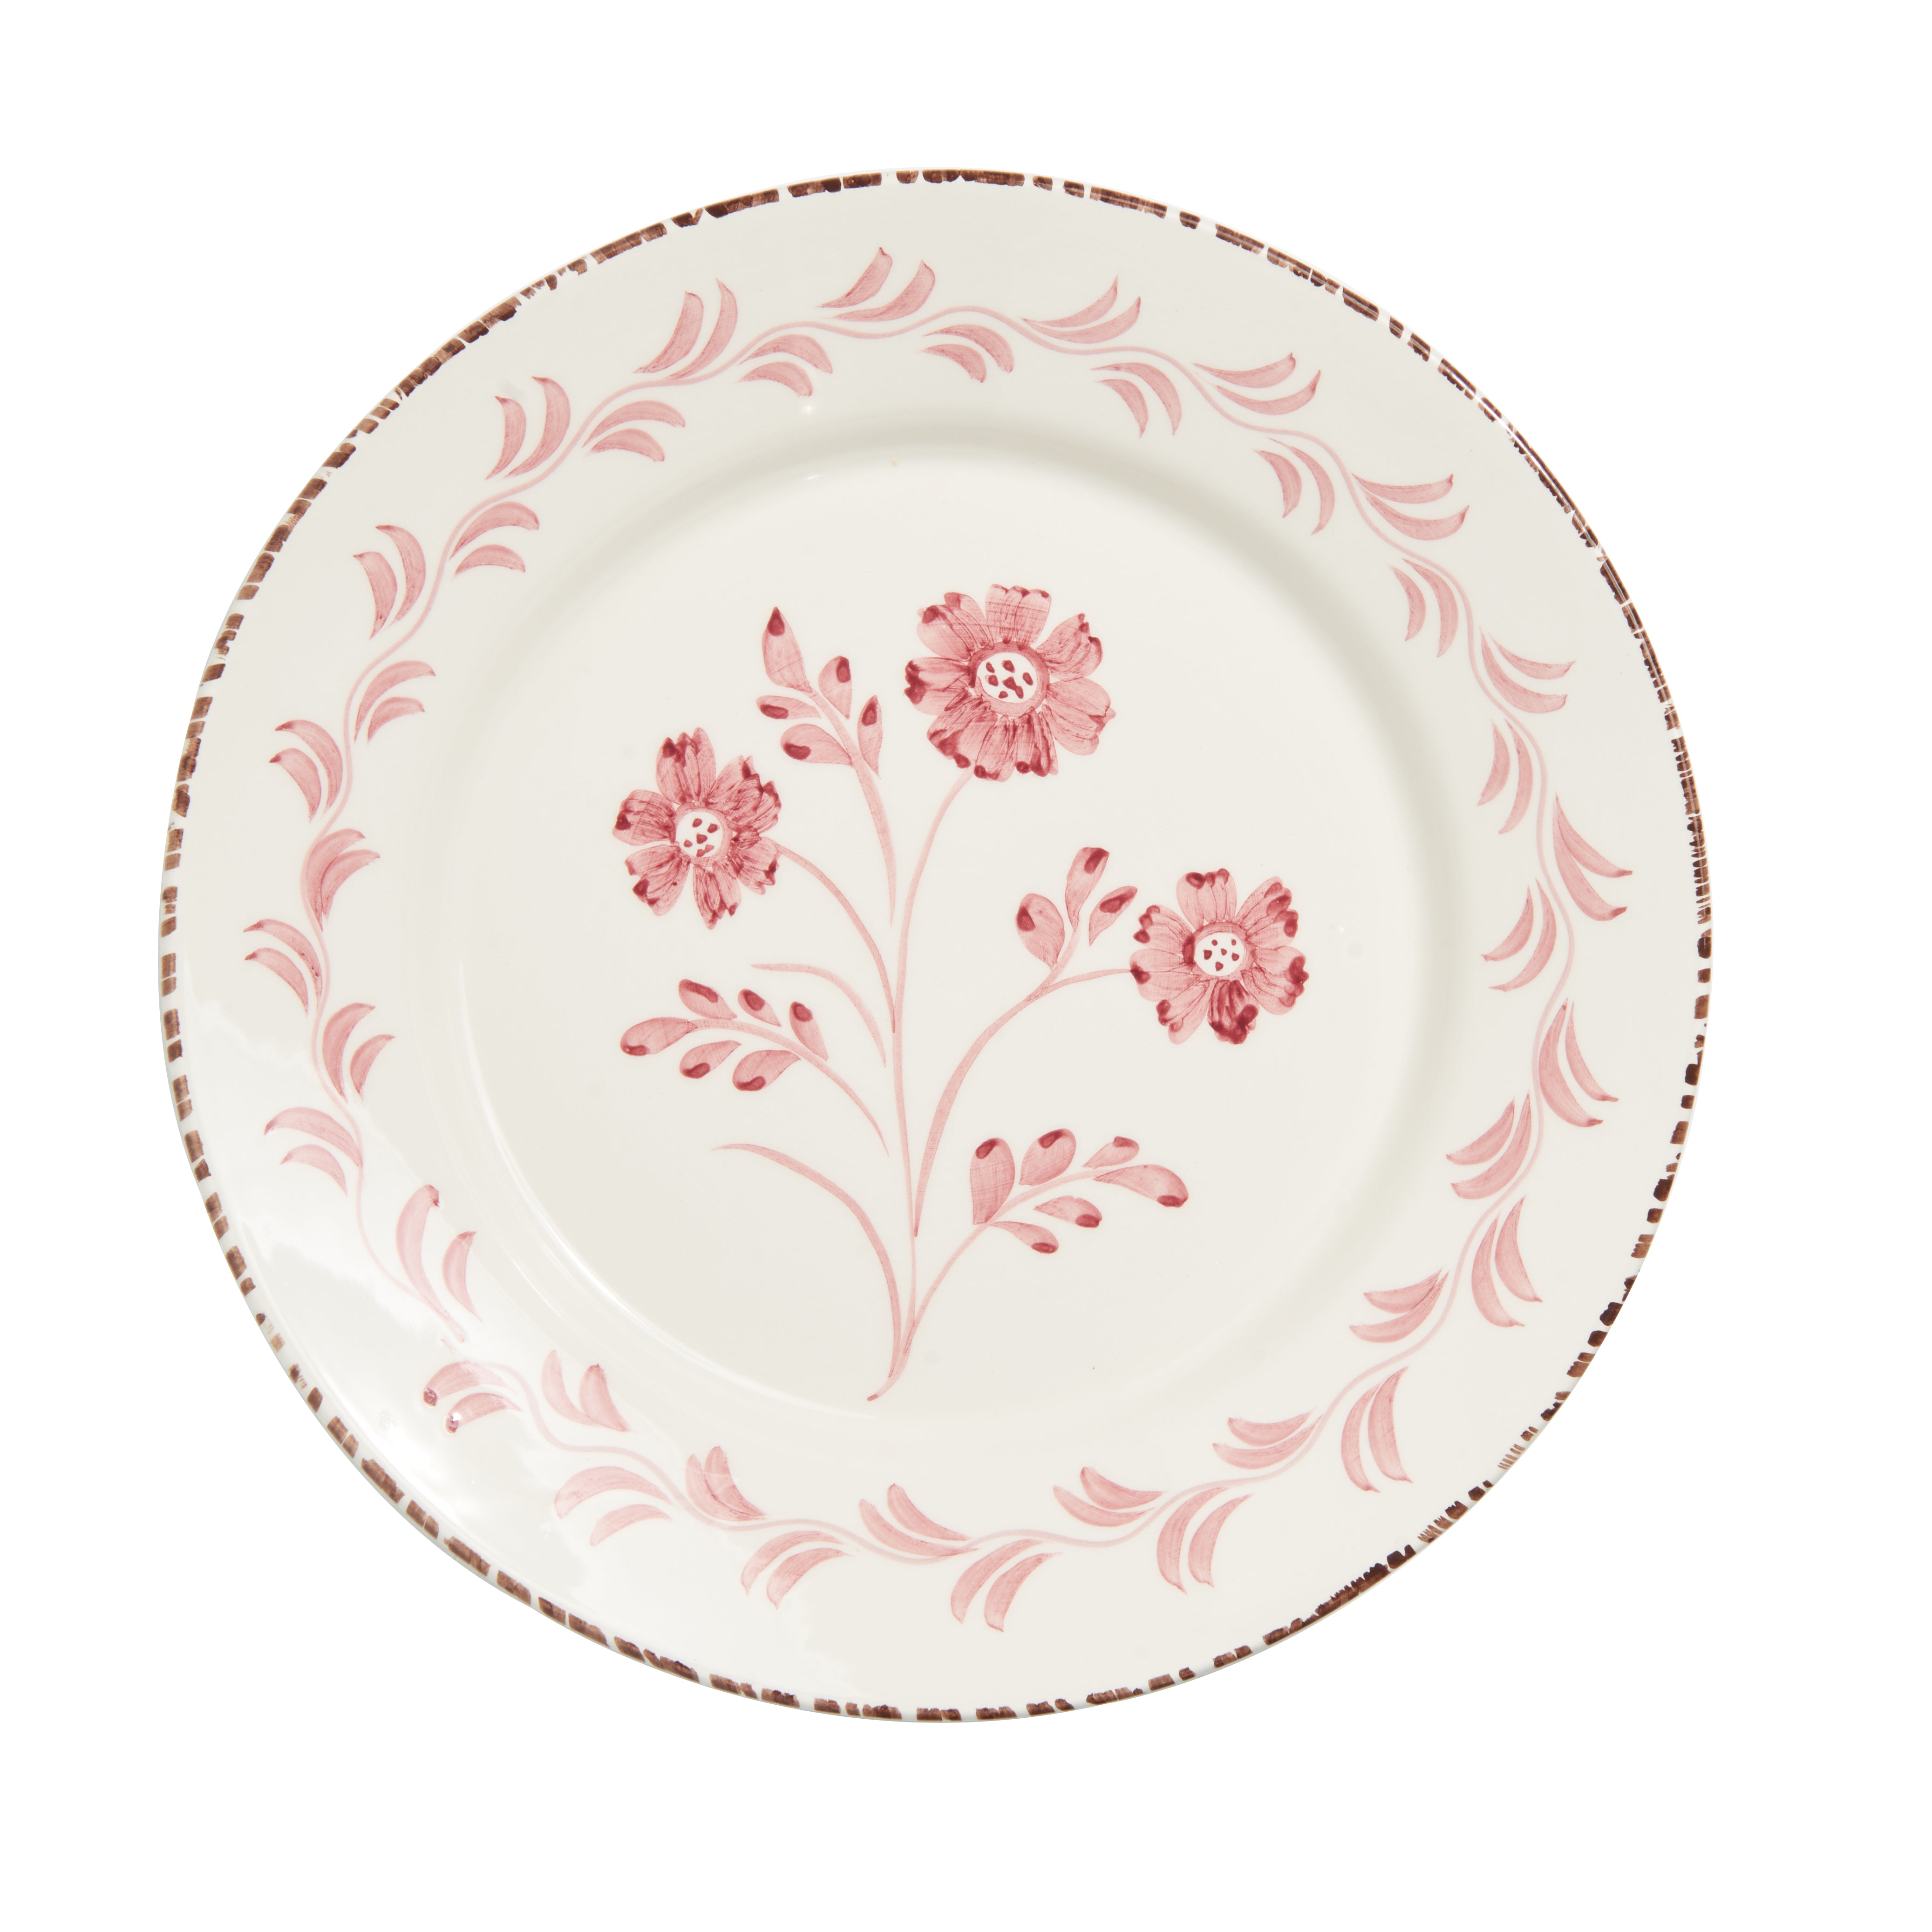 Dinner Plate - Pink 3 Flowers/Vines